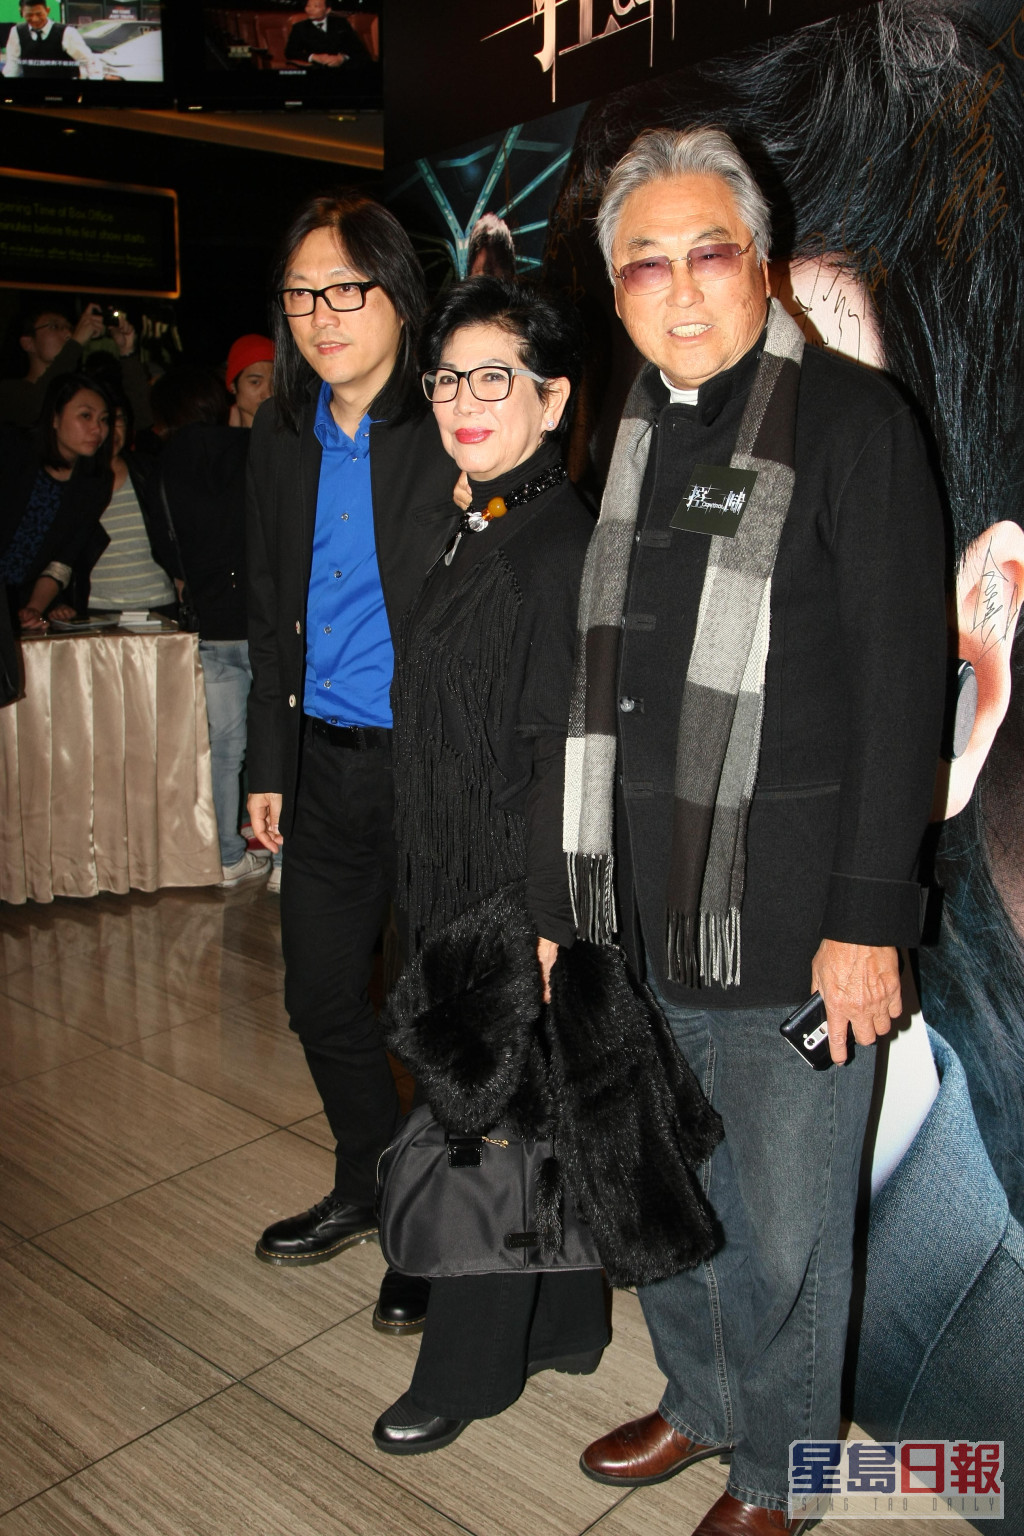 凌波与金汉育有两名儿子，大仔毕国智（左）为香港电影导演，2006年凭《海南鸡饭》获得香港电影金像奖新晋导演，细仔毕国勇为台湾音乐制作人。